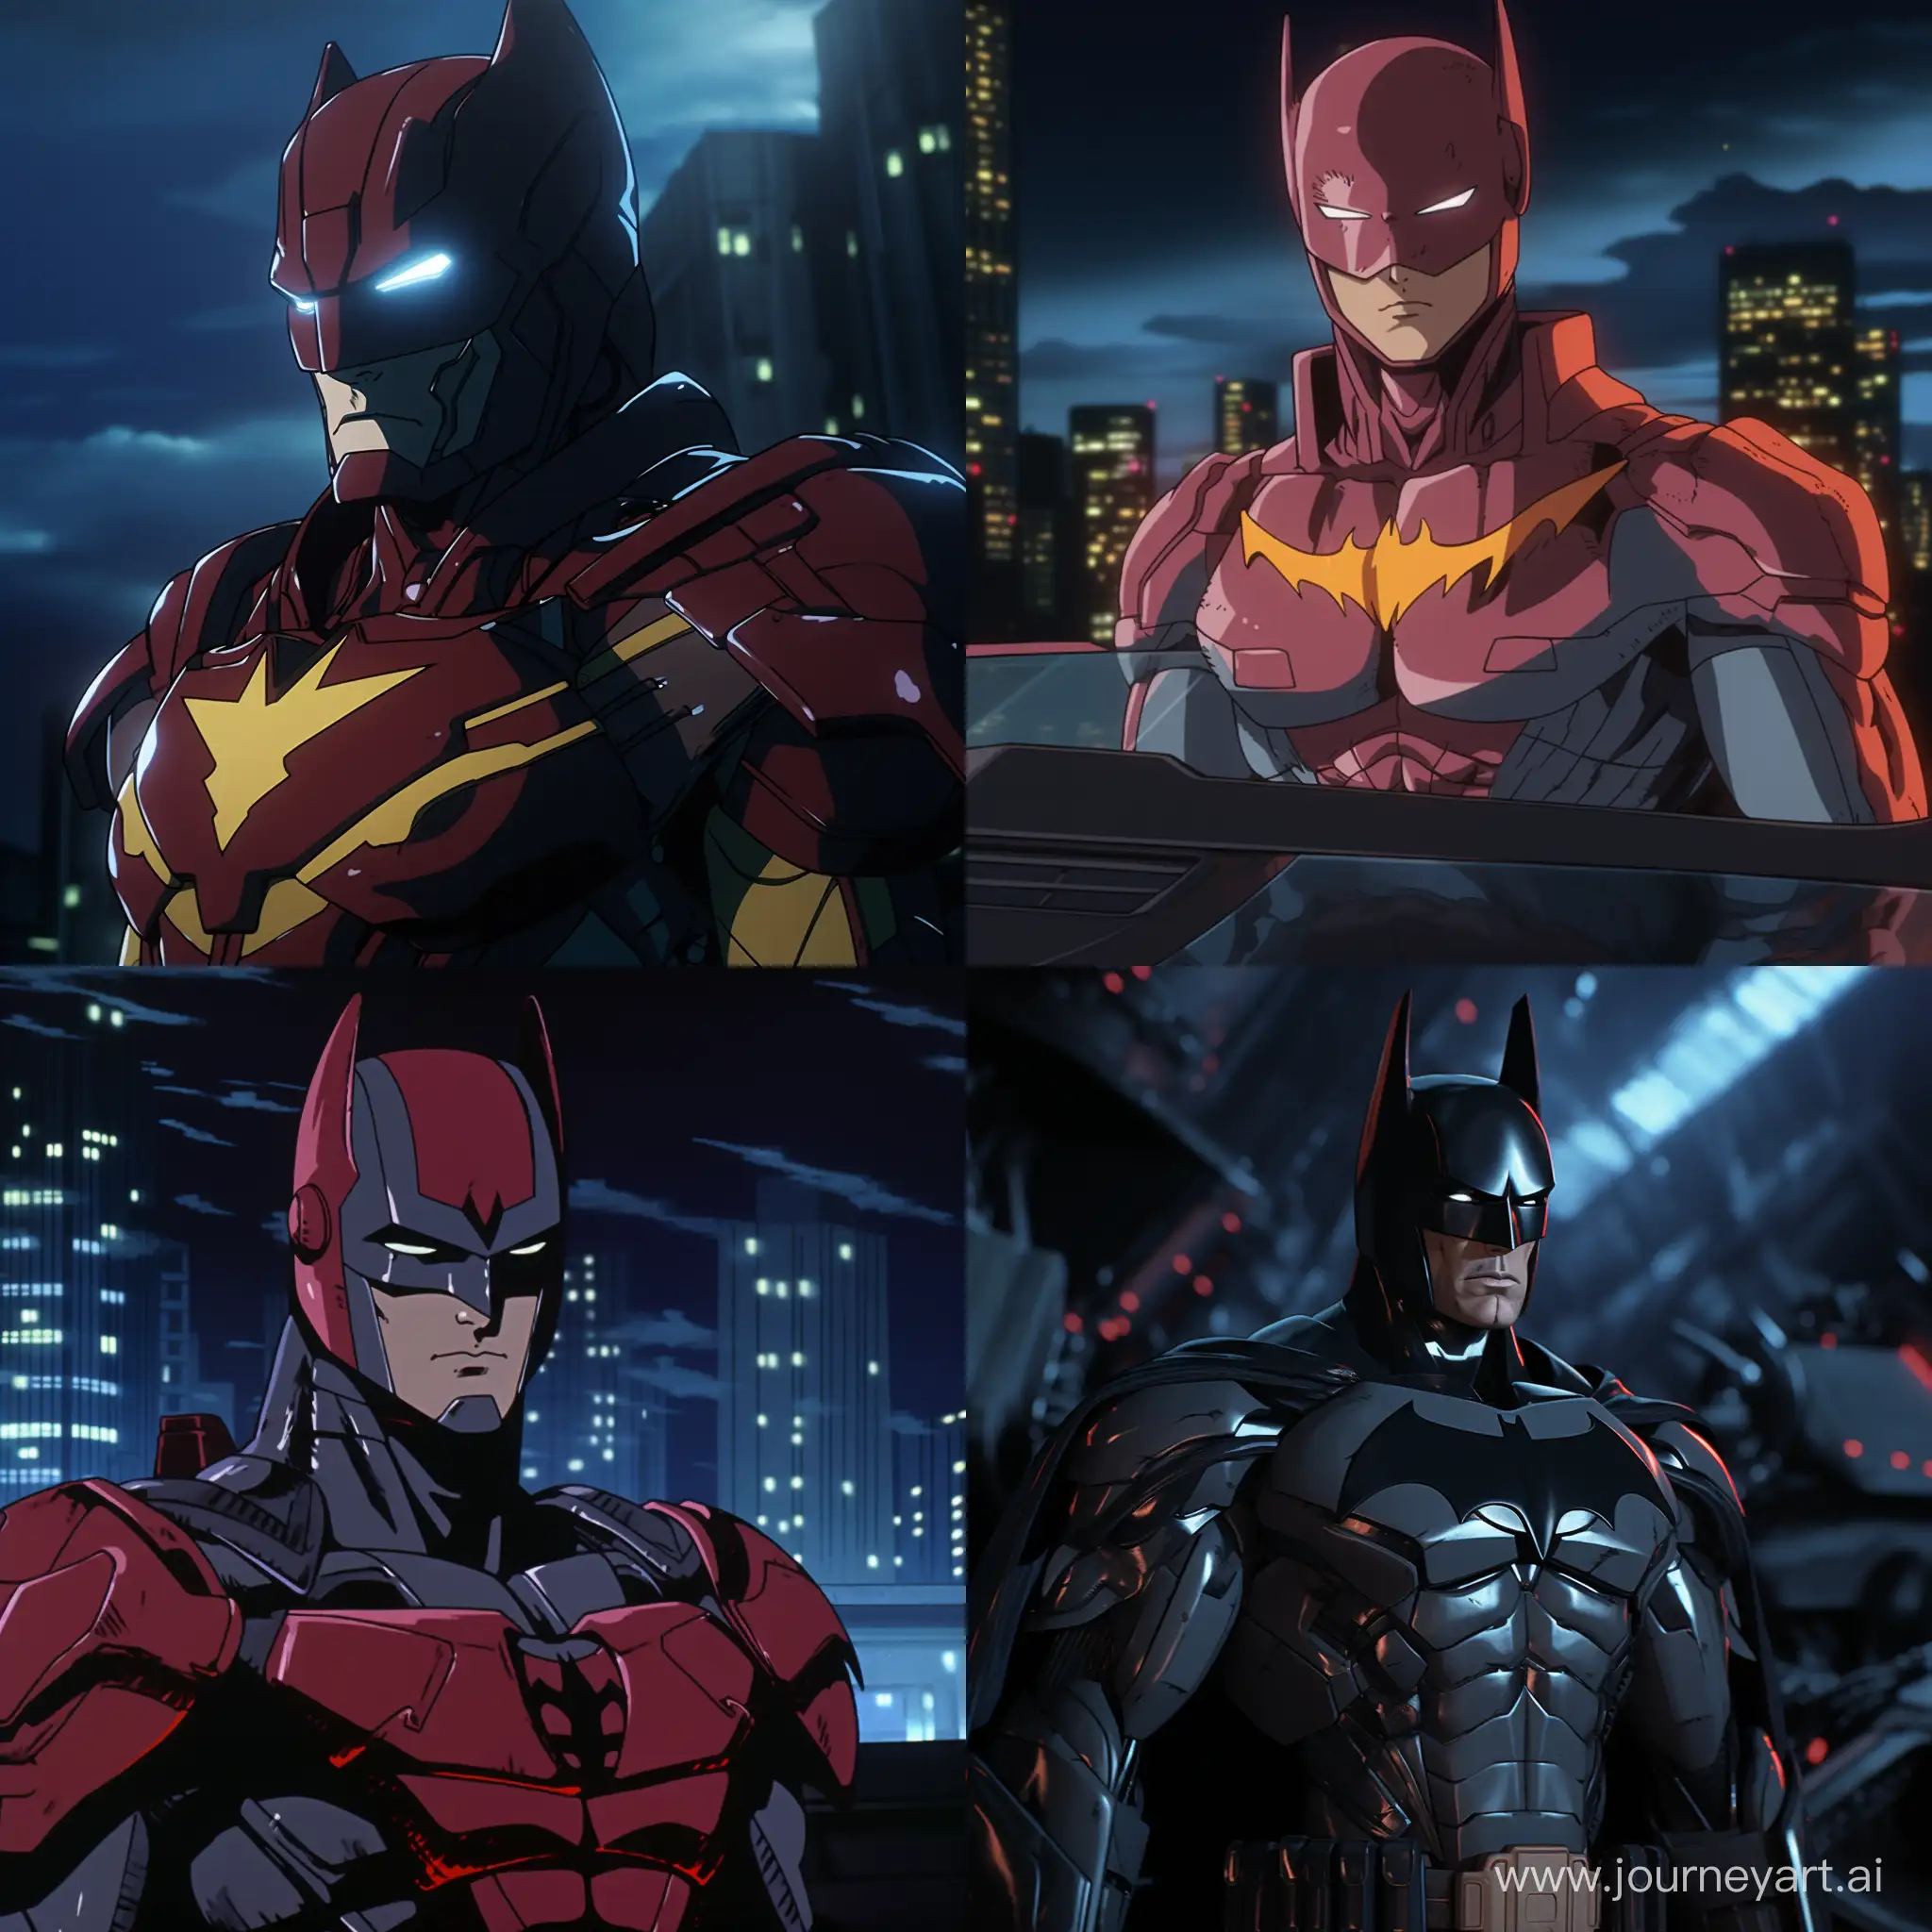 Retro-Anime-Fusion-Batman-in-Ironman-Costume